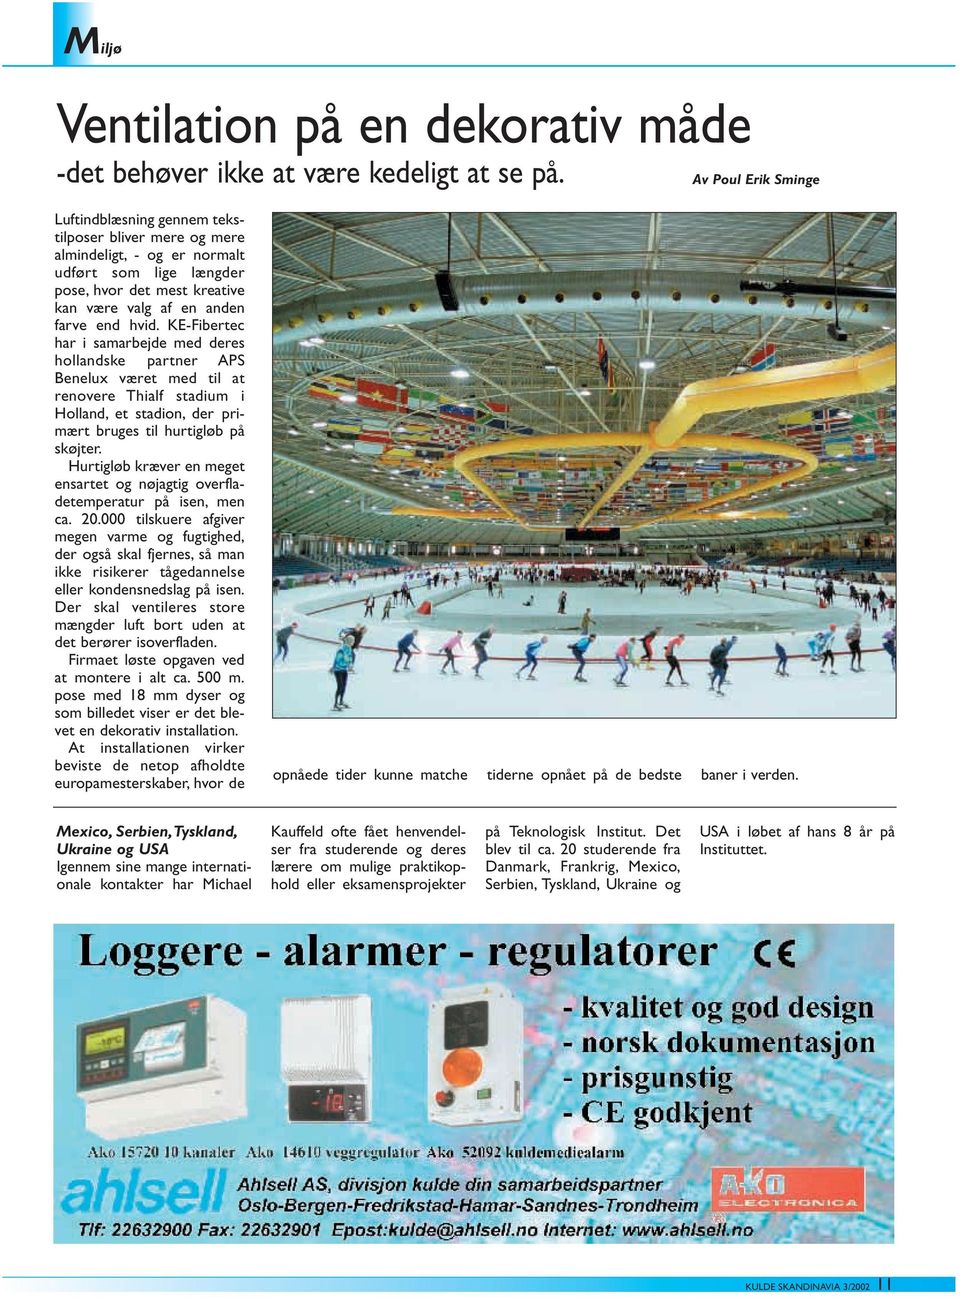 KE-Fibertec har i samarbejde med deres hollandske partner APS Benelux været med til at renovere Thialf stadium i Holland, et stadion, der primært bruges til hurtigløb på skøjter.